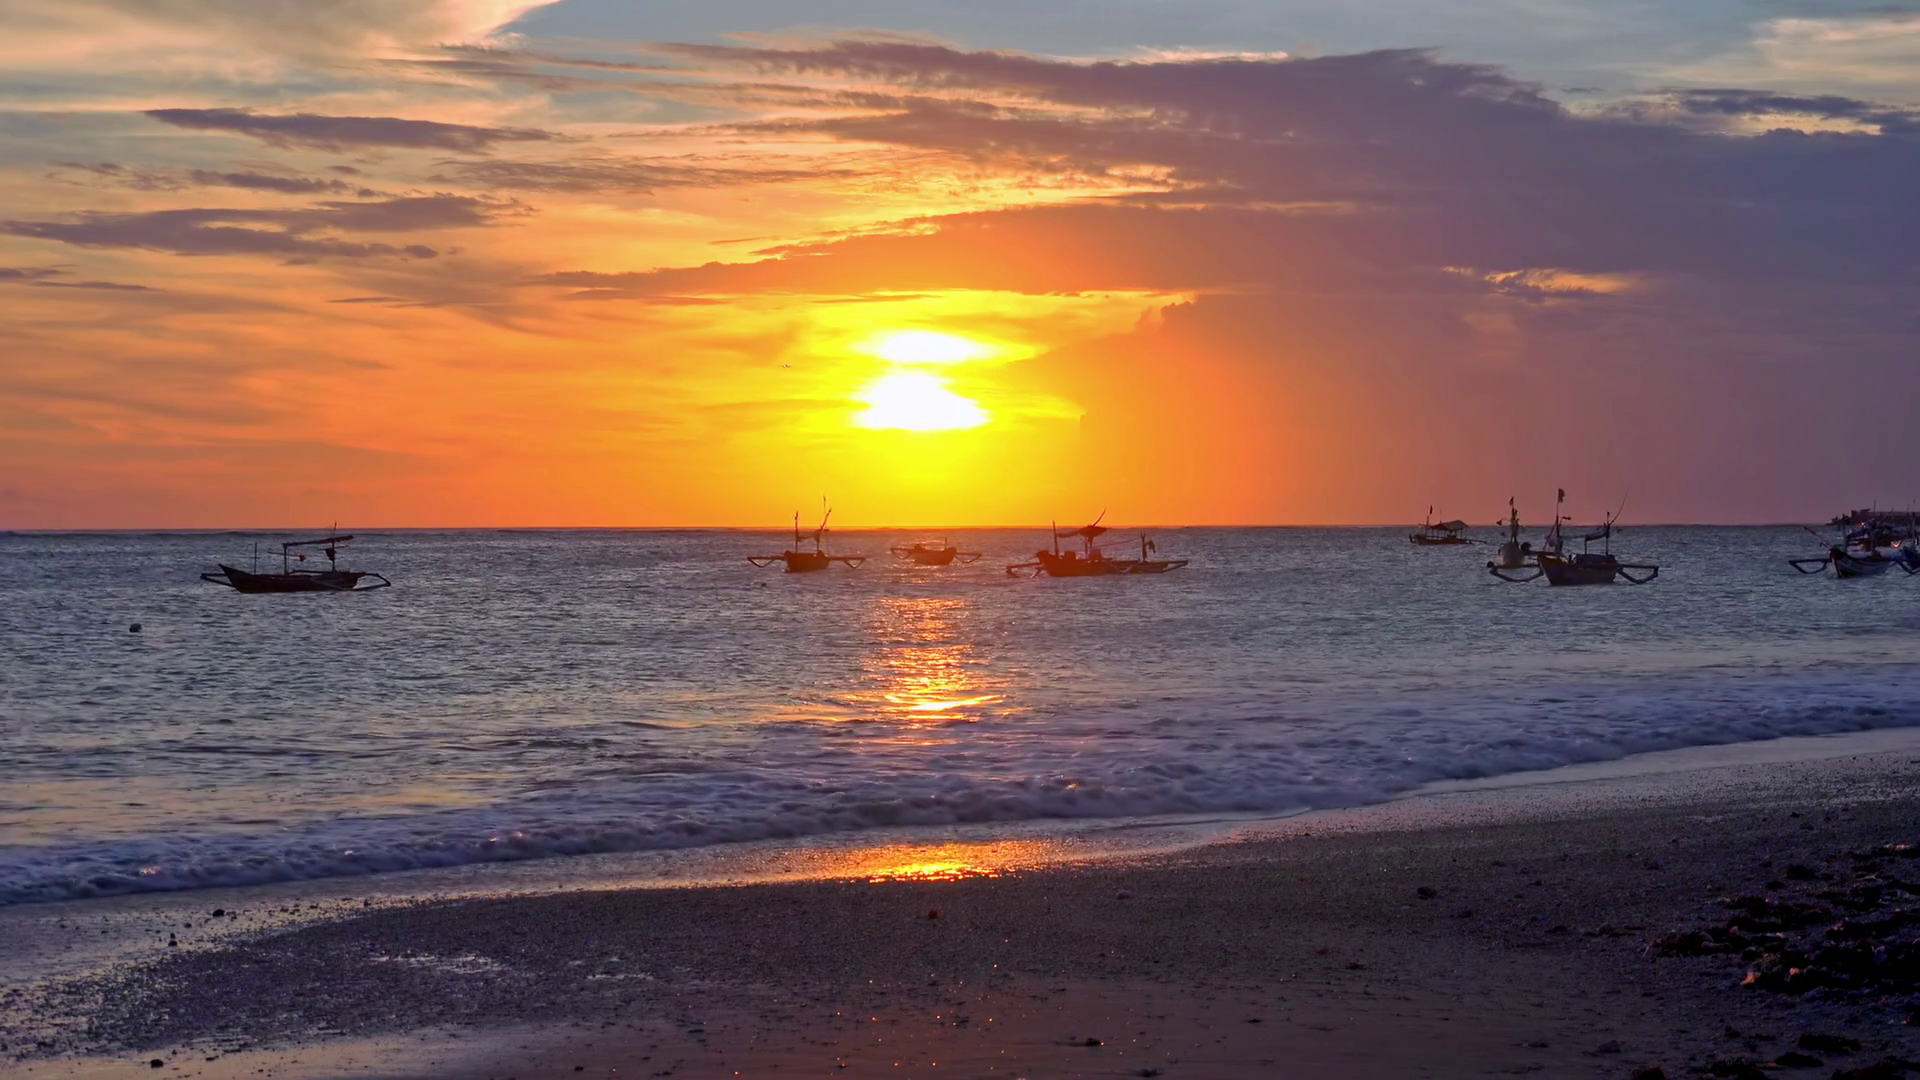 Amazing seascape with setting sun near horizon line, orange sunset ...